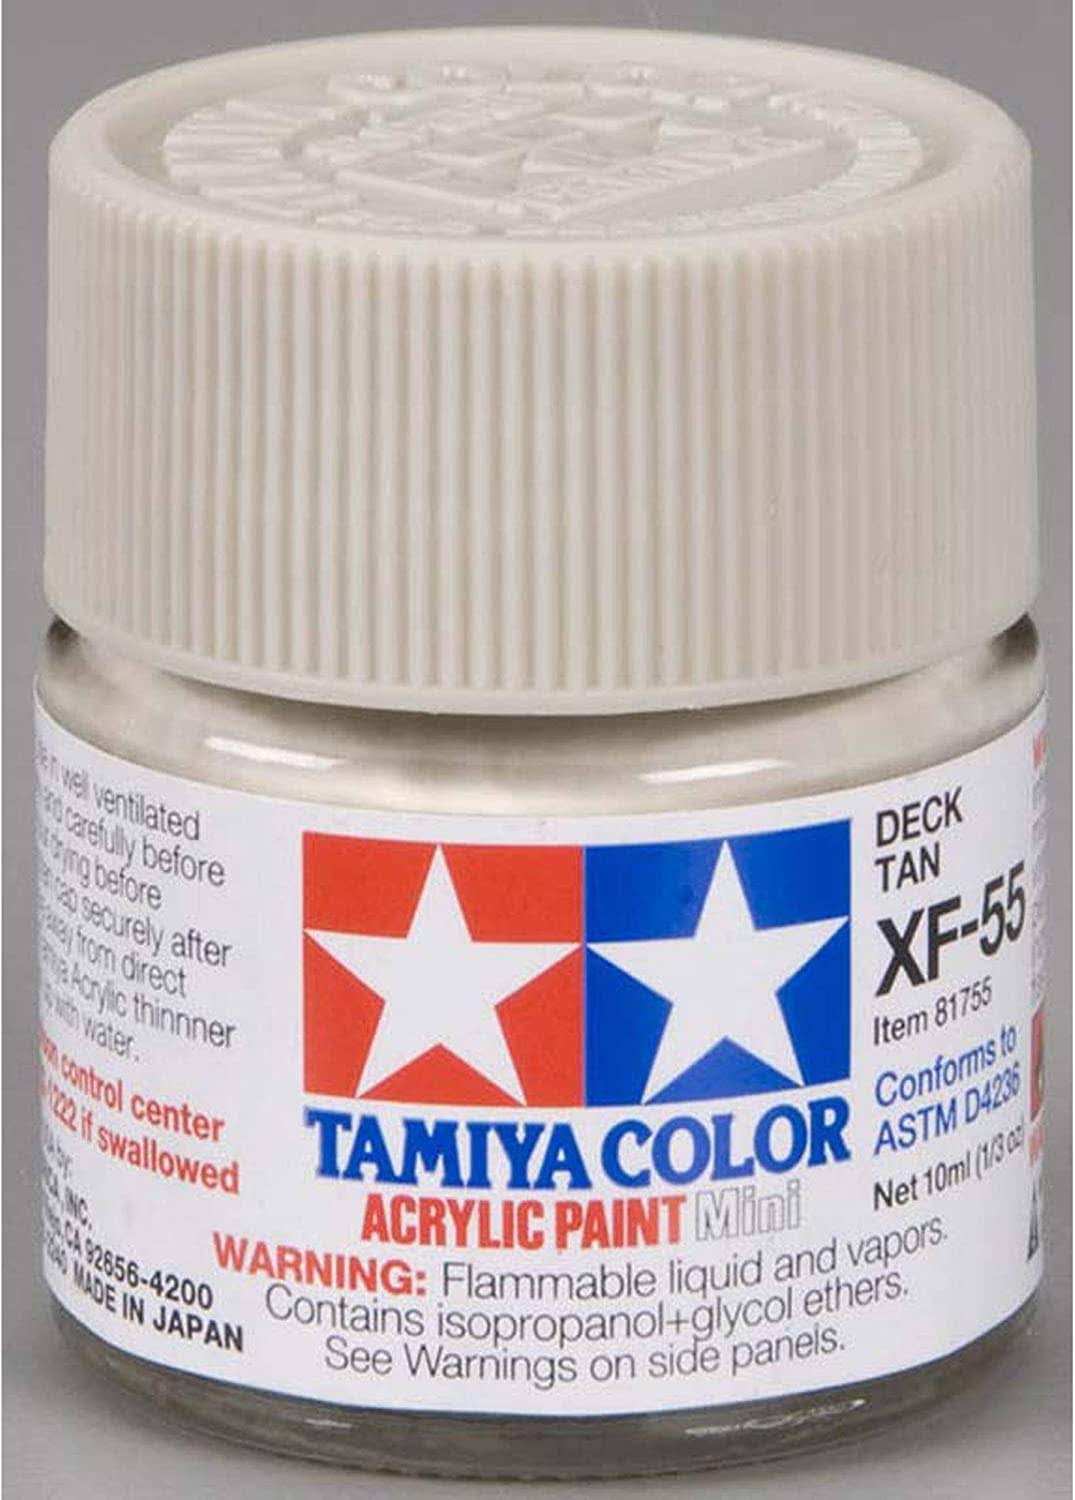 Tamiya - Acrylic Mini XF-55 Deck Tan